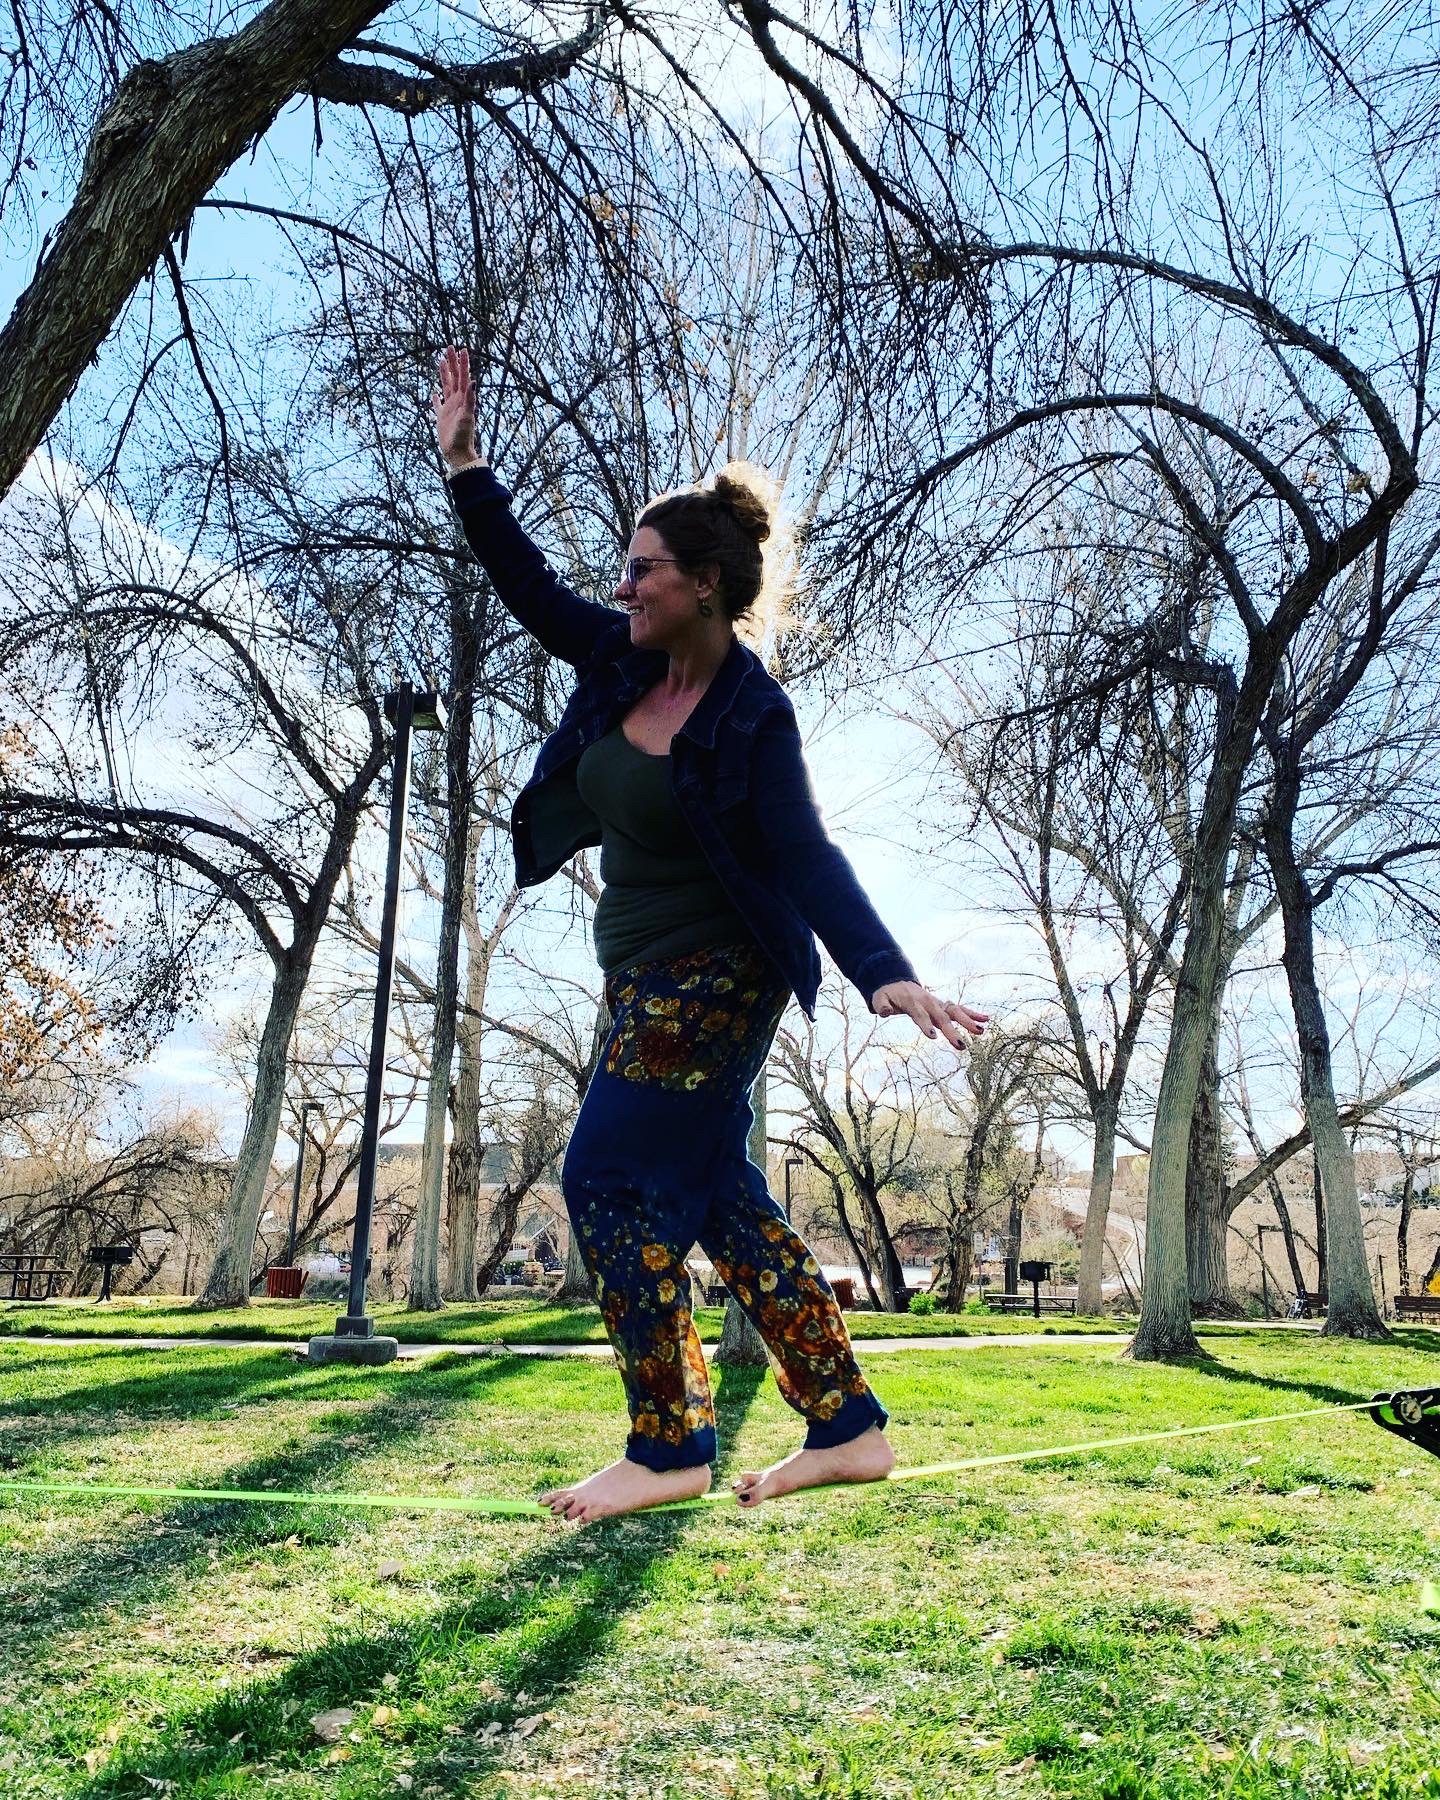 Alana slacklining in a park